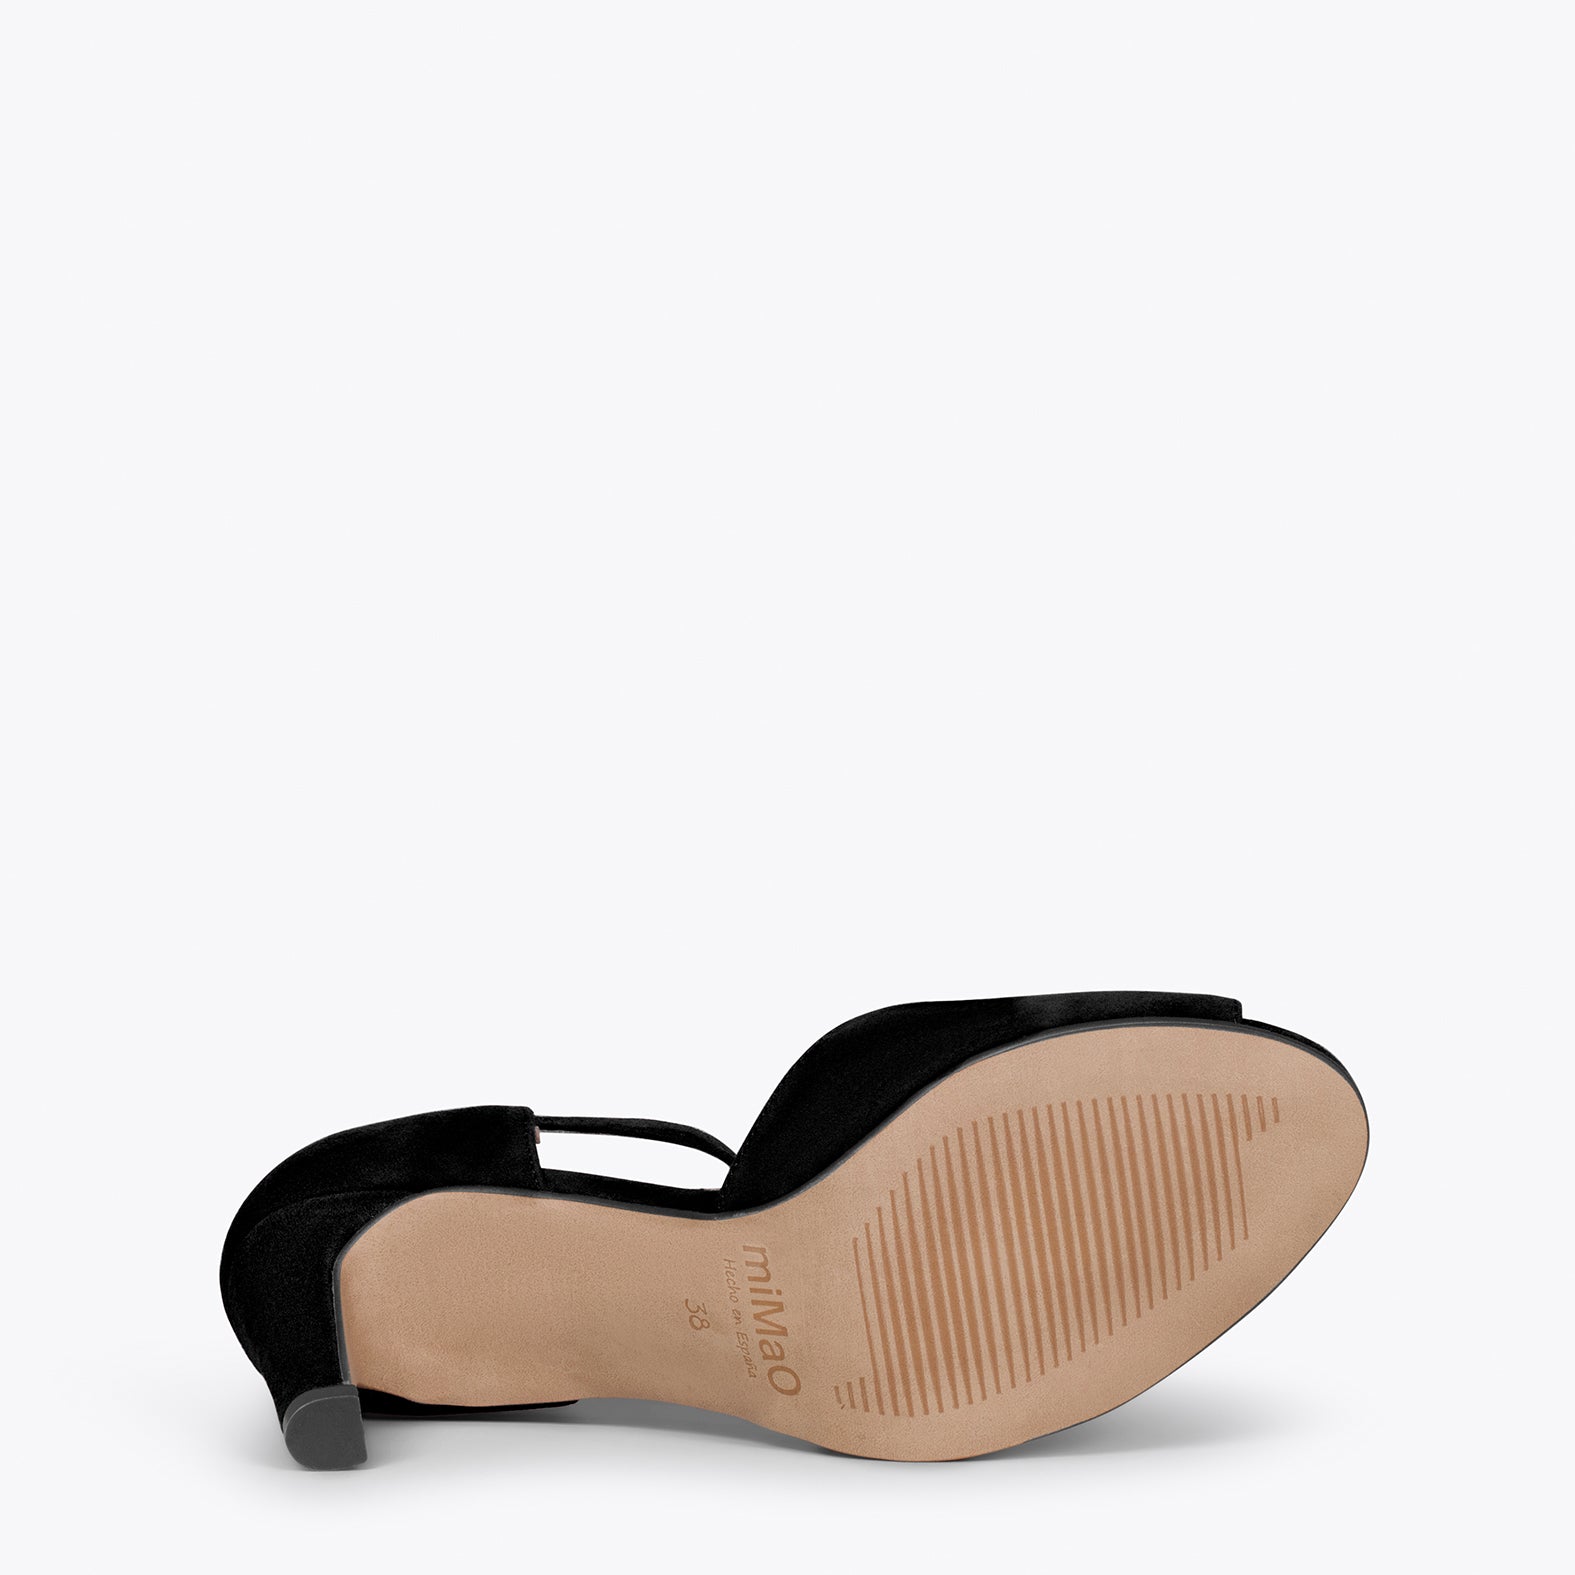 PÉTALO – Sandales élégantes à talon haut NOIR